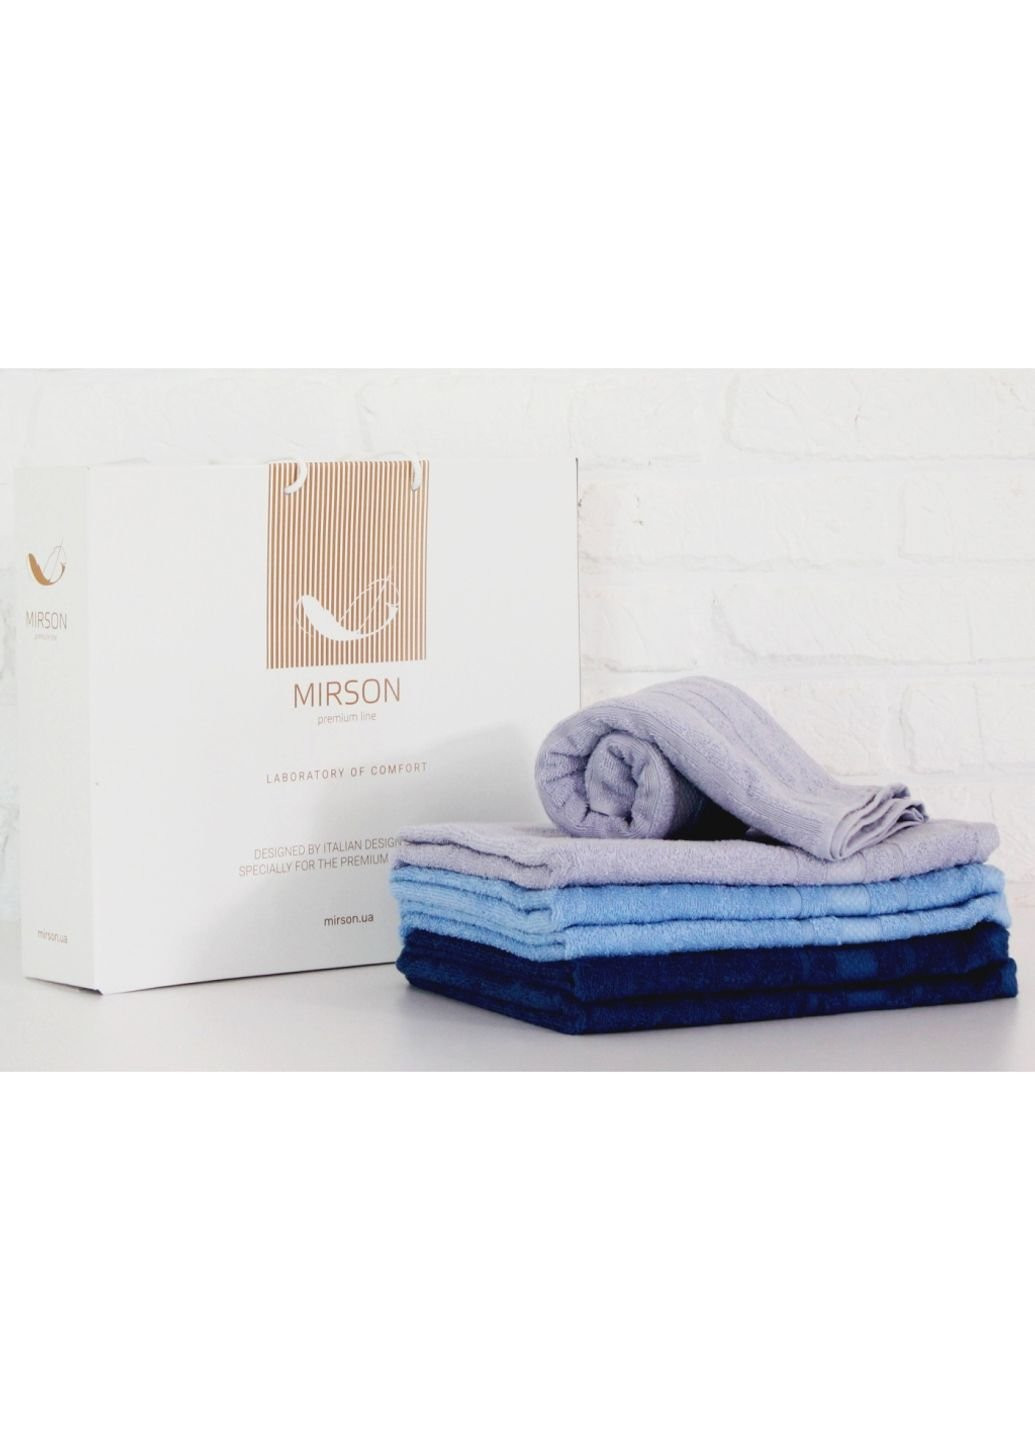 Mirson полотенце набор банных №5096 elite softnes pure 70х140 6 шт (2200003525700) комбинированный производство - Украина